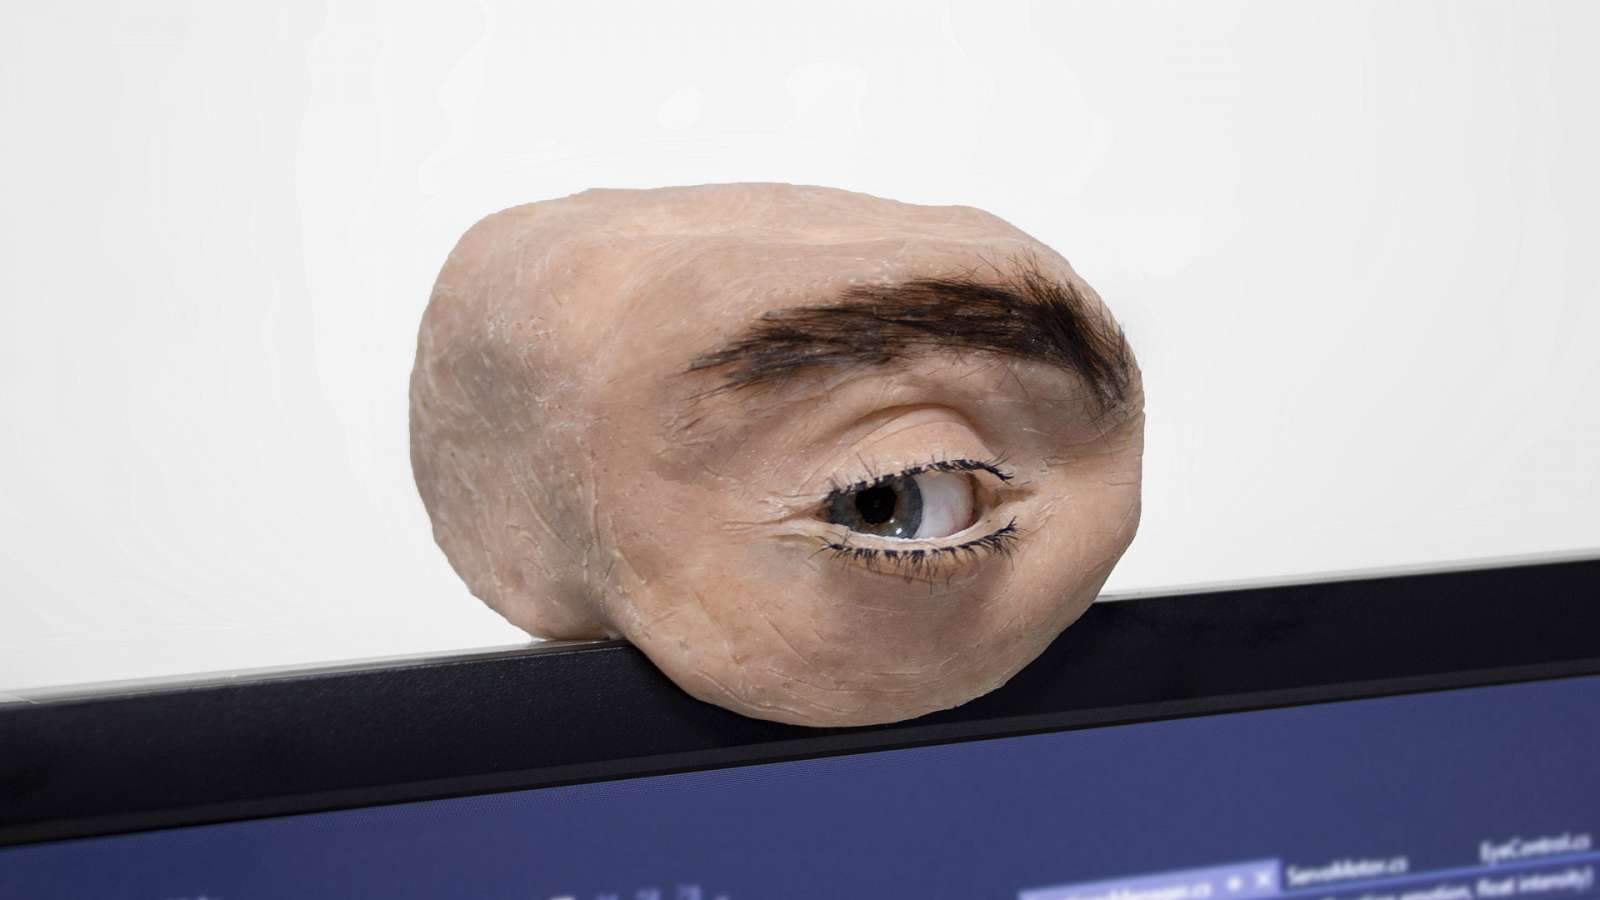 Lidské oko jako webkamera, která vás pozoruje, mrká a vyjadřuje emoce